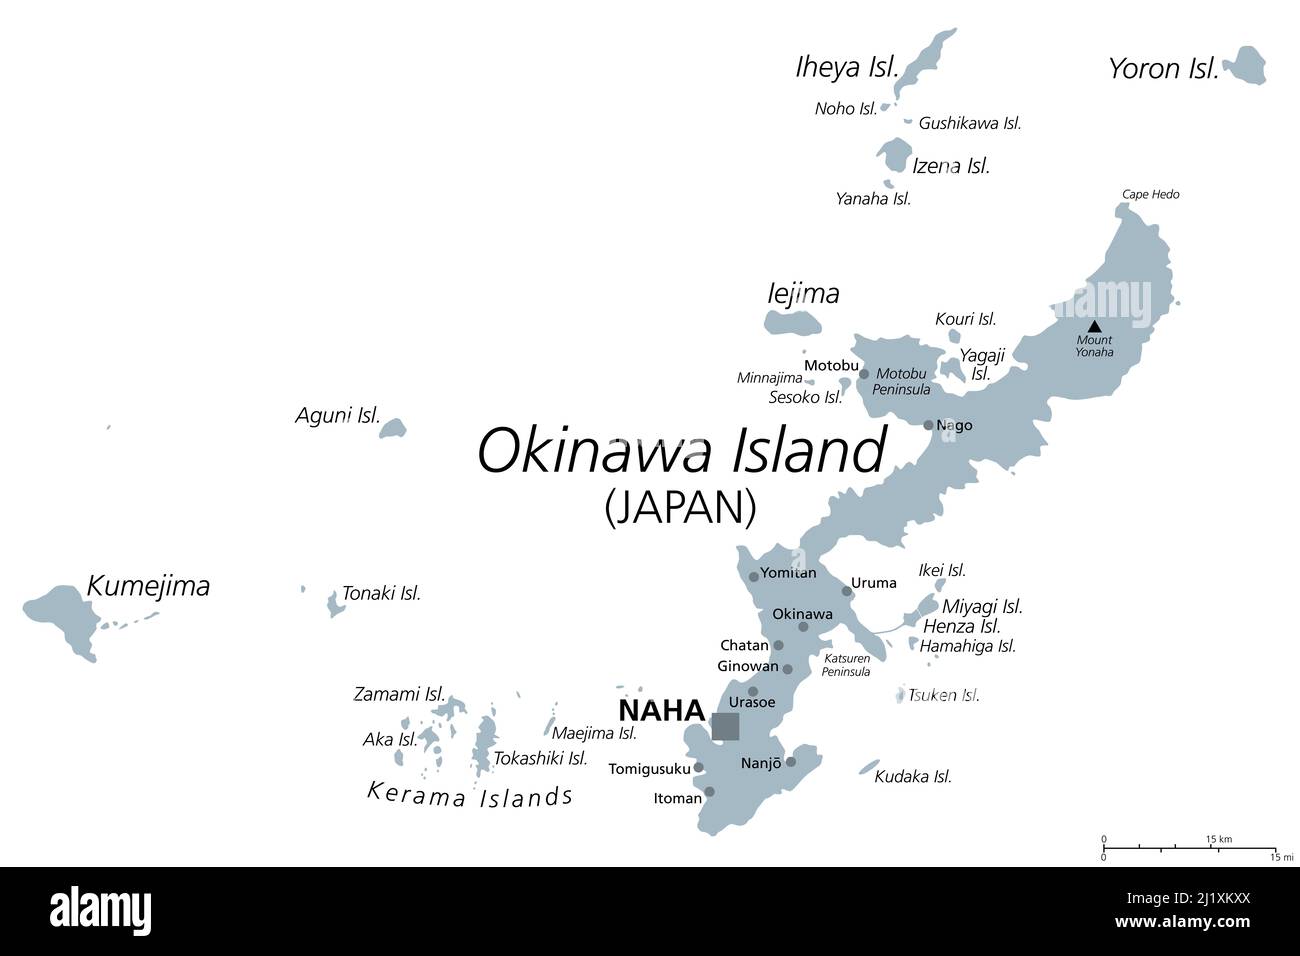 Okinawa-Inseln, graue politische Landkarte. Inselgruppe in der japanischen Präfektur Okinawa, im Ostchinesischen Meer, mit der Hauptstadt Naha. Stockfoto